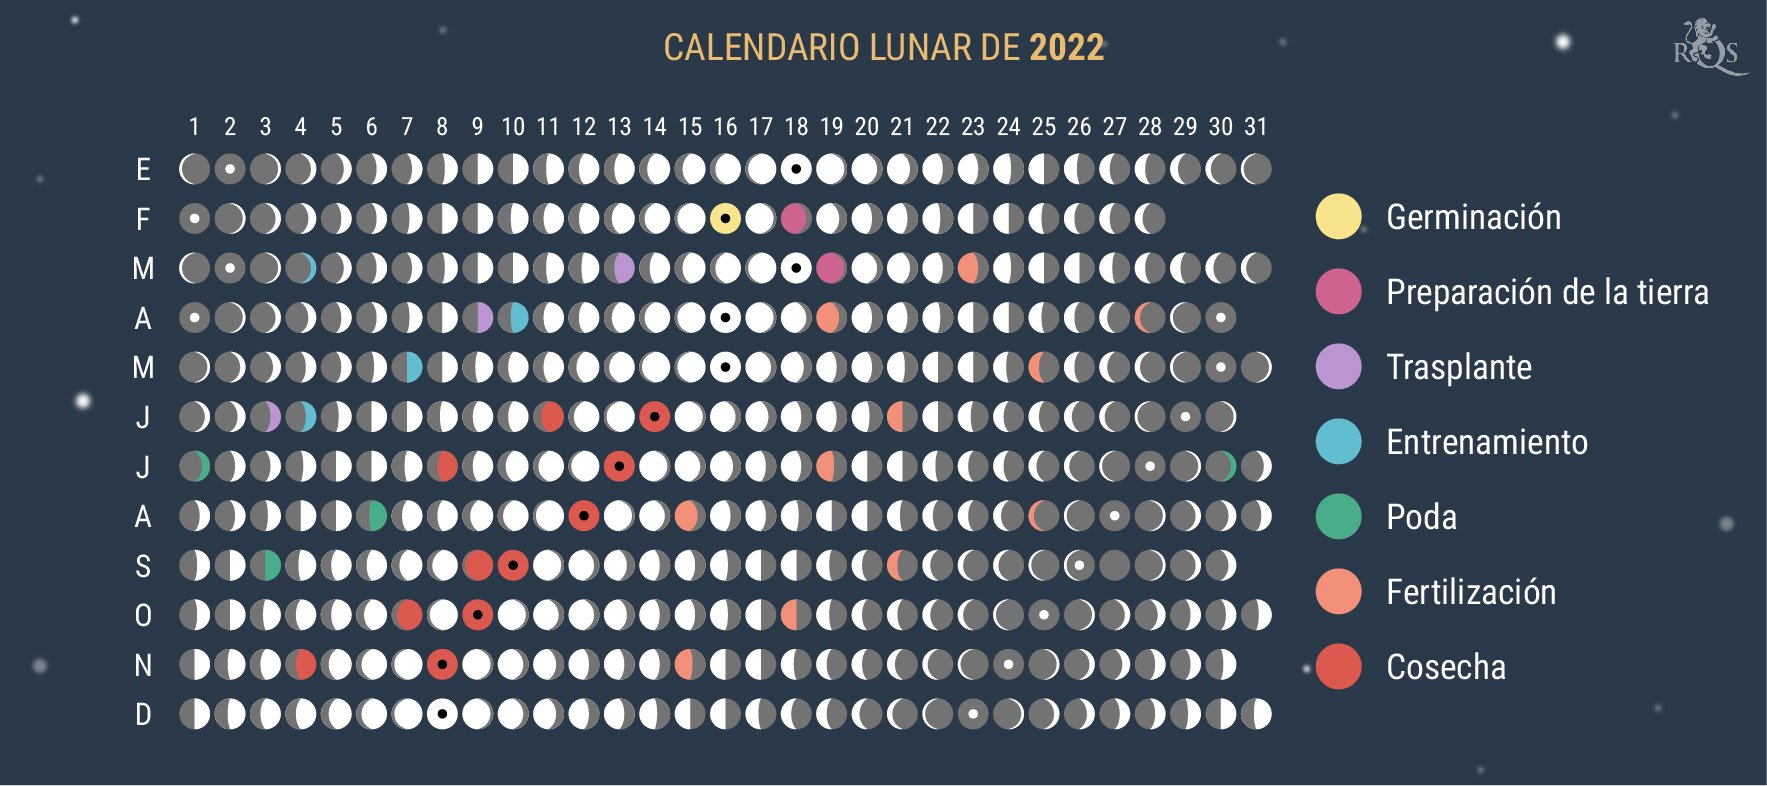 Cómo utilizar el calendario lunar de 2022 durante la temporada de cultivo